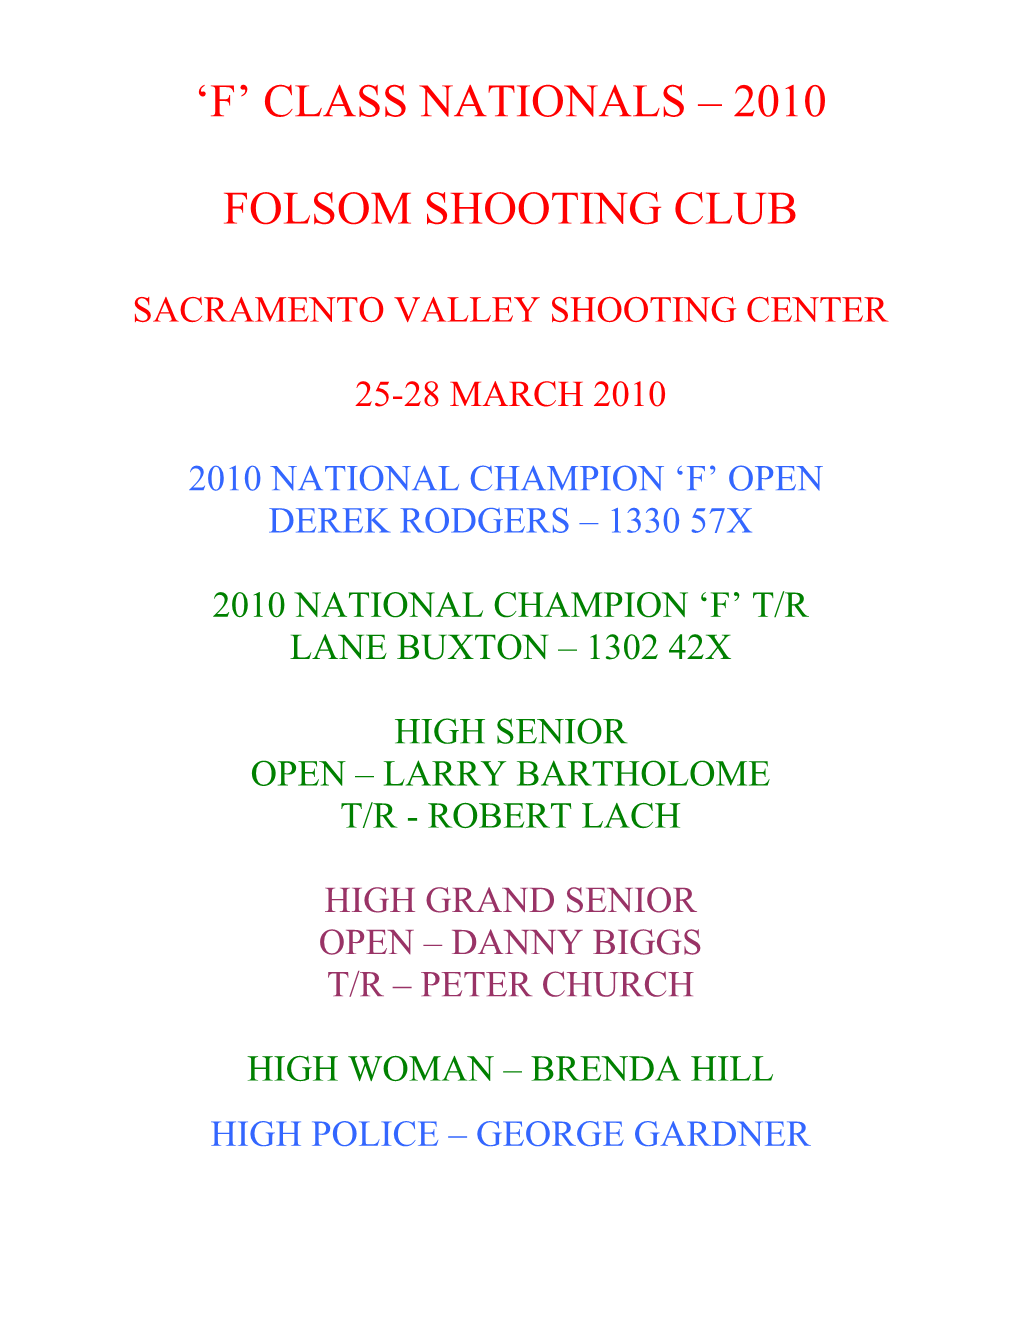 Sacramento Valley Shooting Center